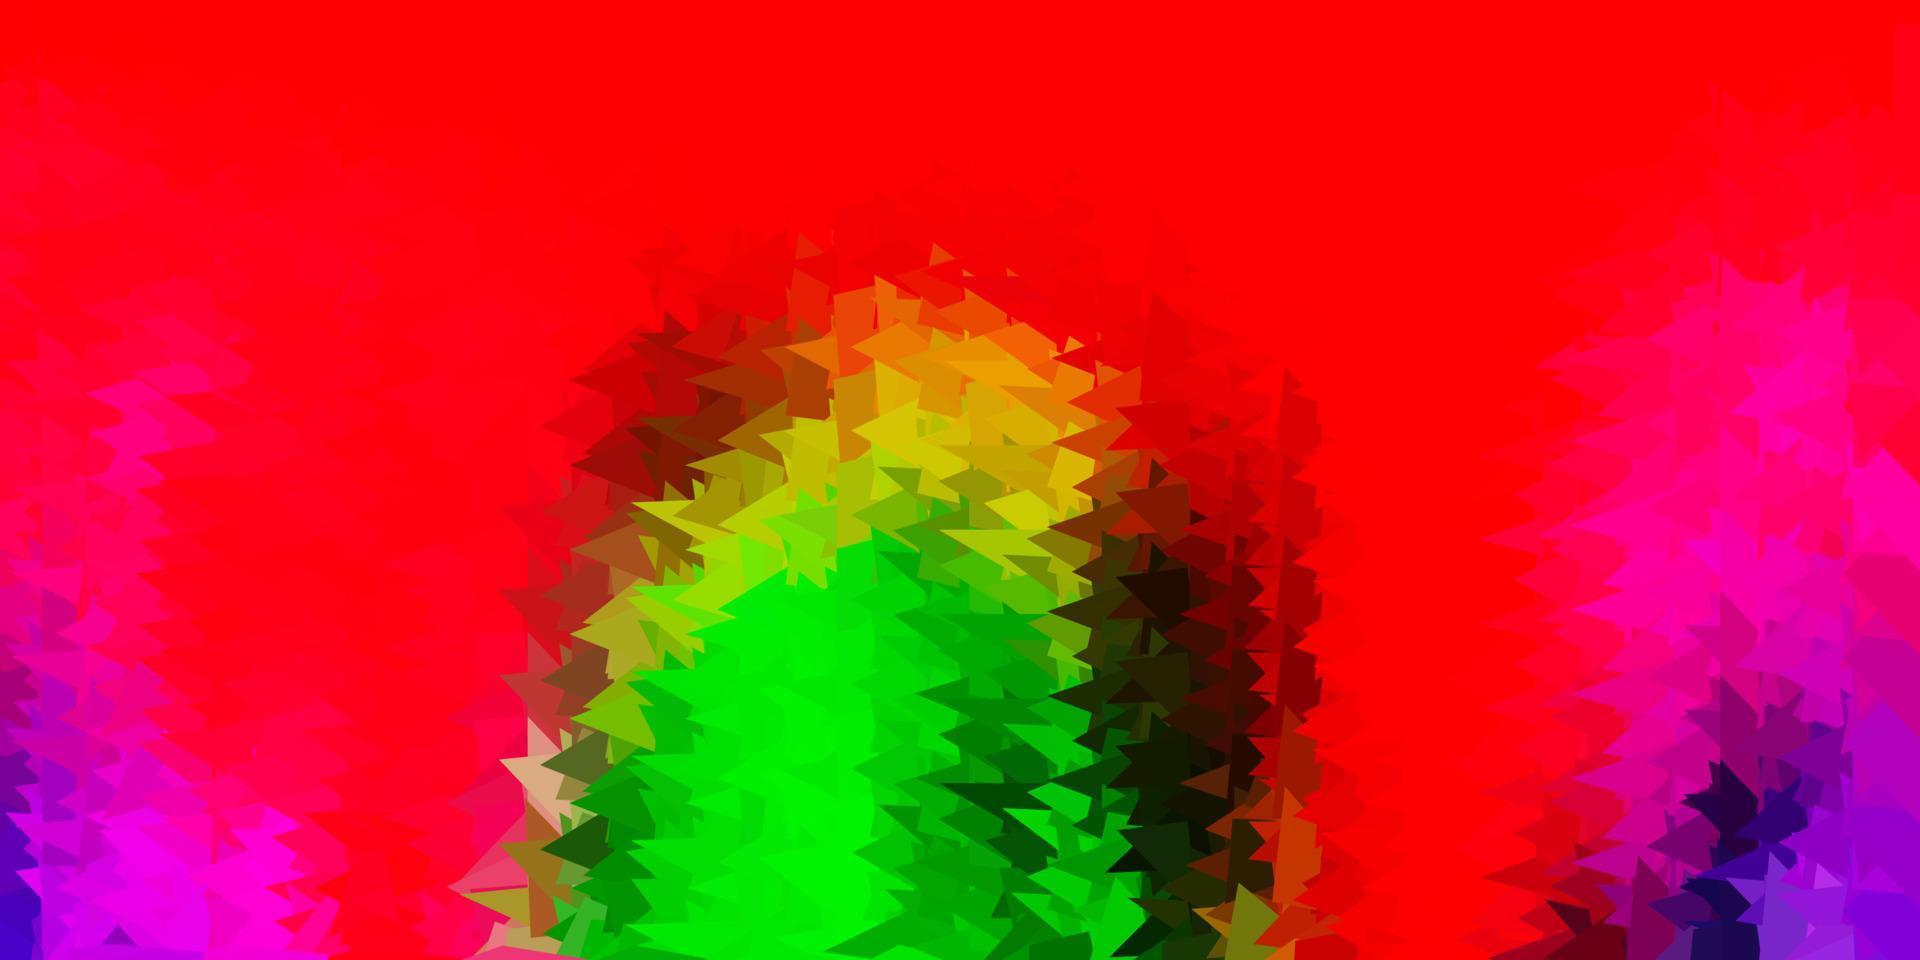 patrón poligonal de vector rosa claro, verde.